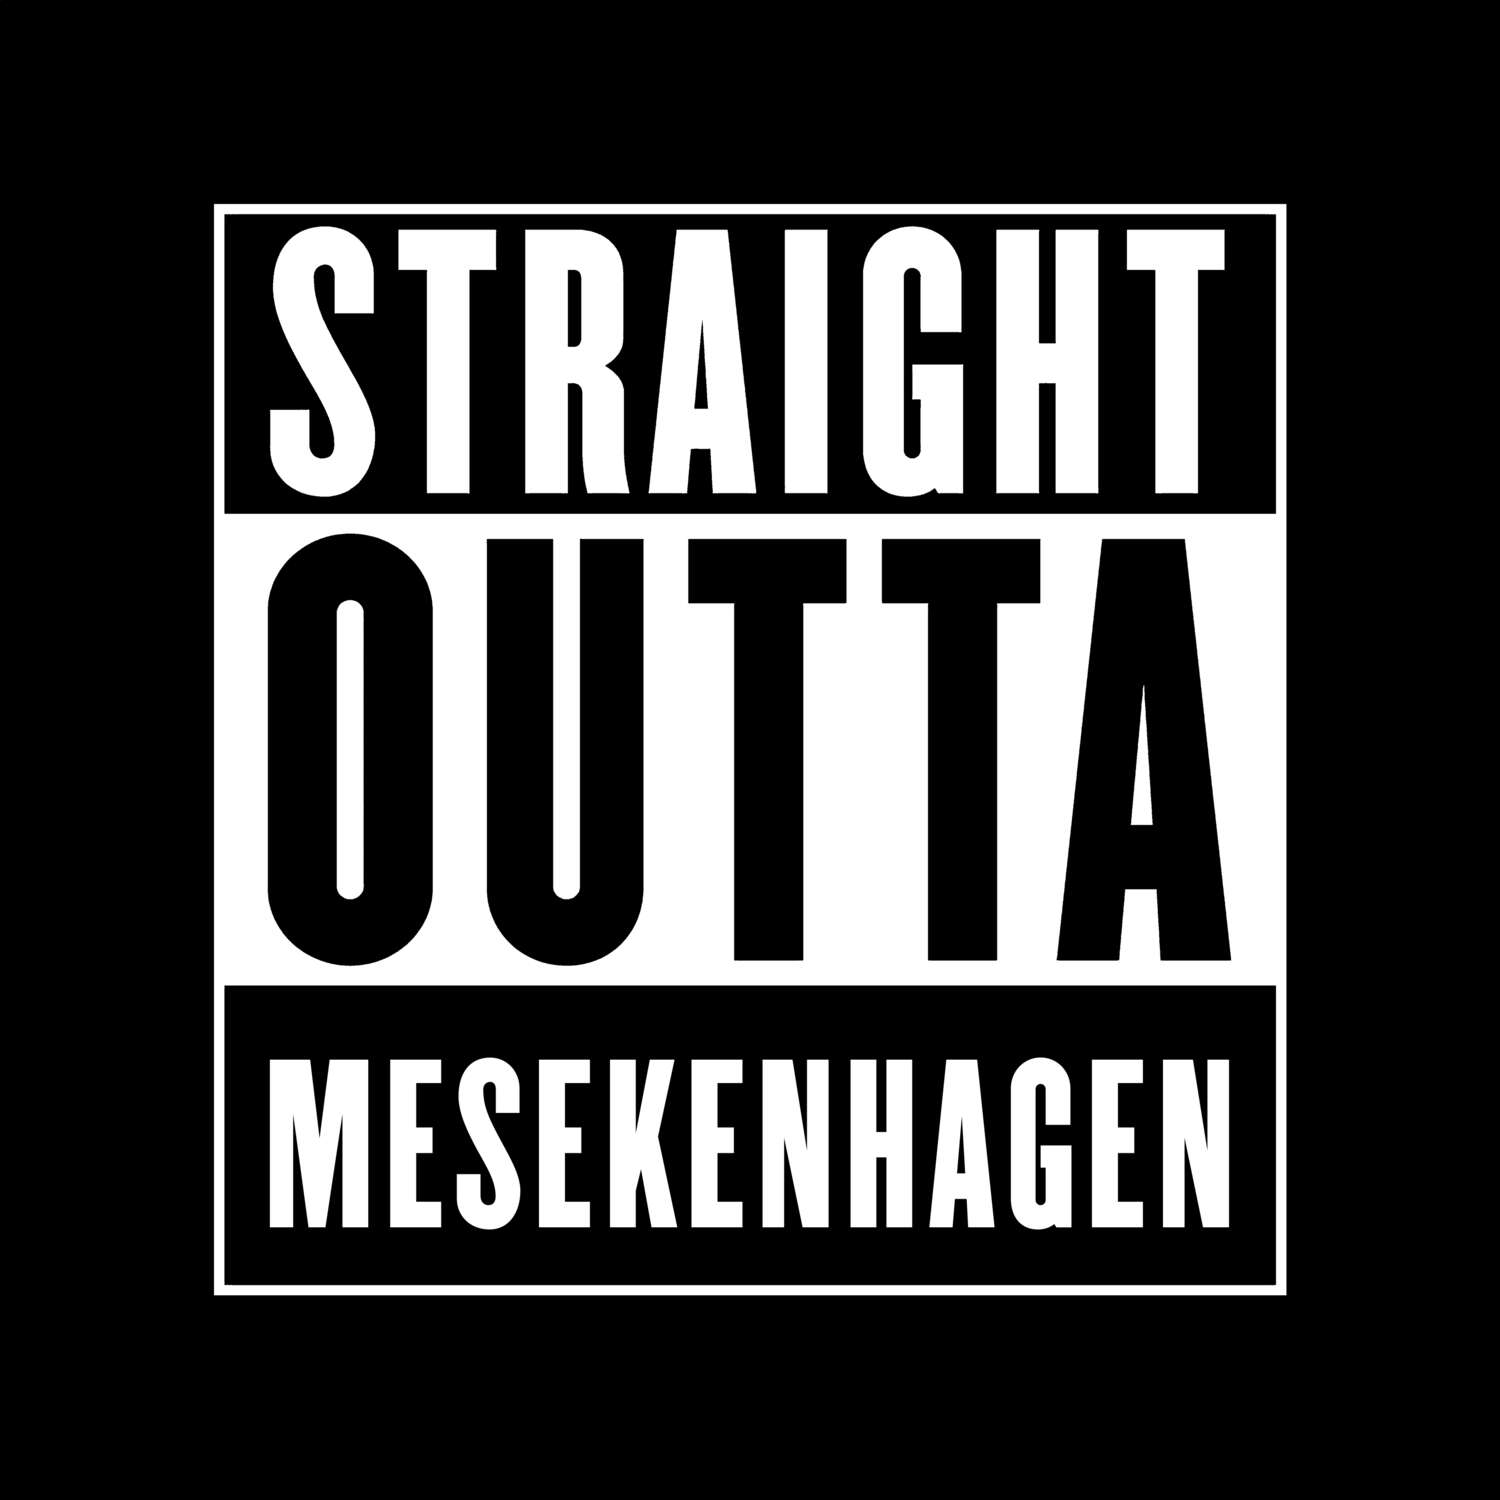 Mesekenhagen T-Shirt »Straight Outta«